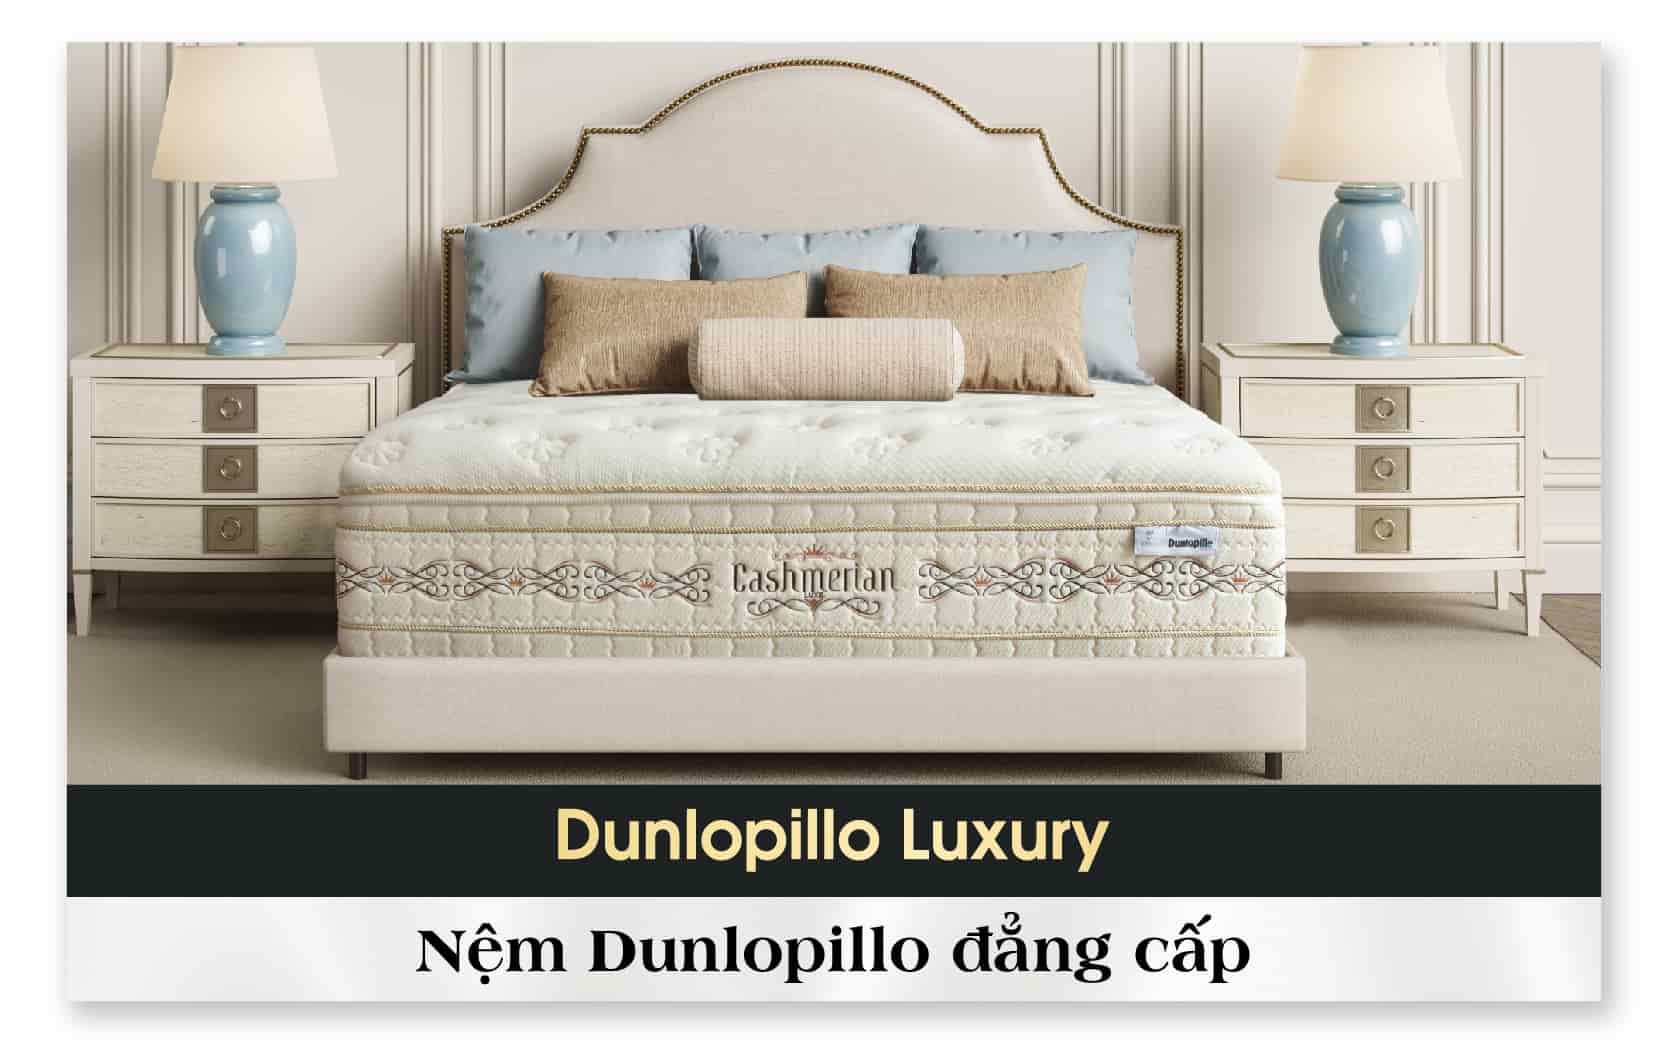 Dunlopillo Luxury - Bộ sưu tập những tấm nệm tuyệt vời dành cho bạn!